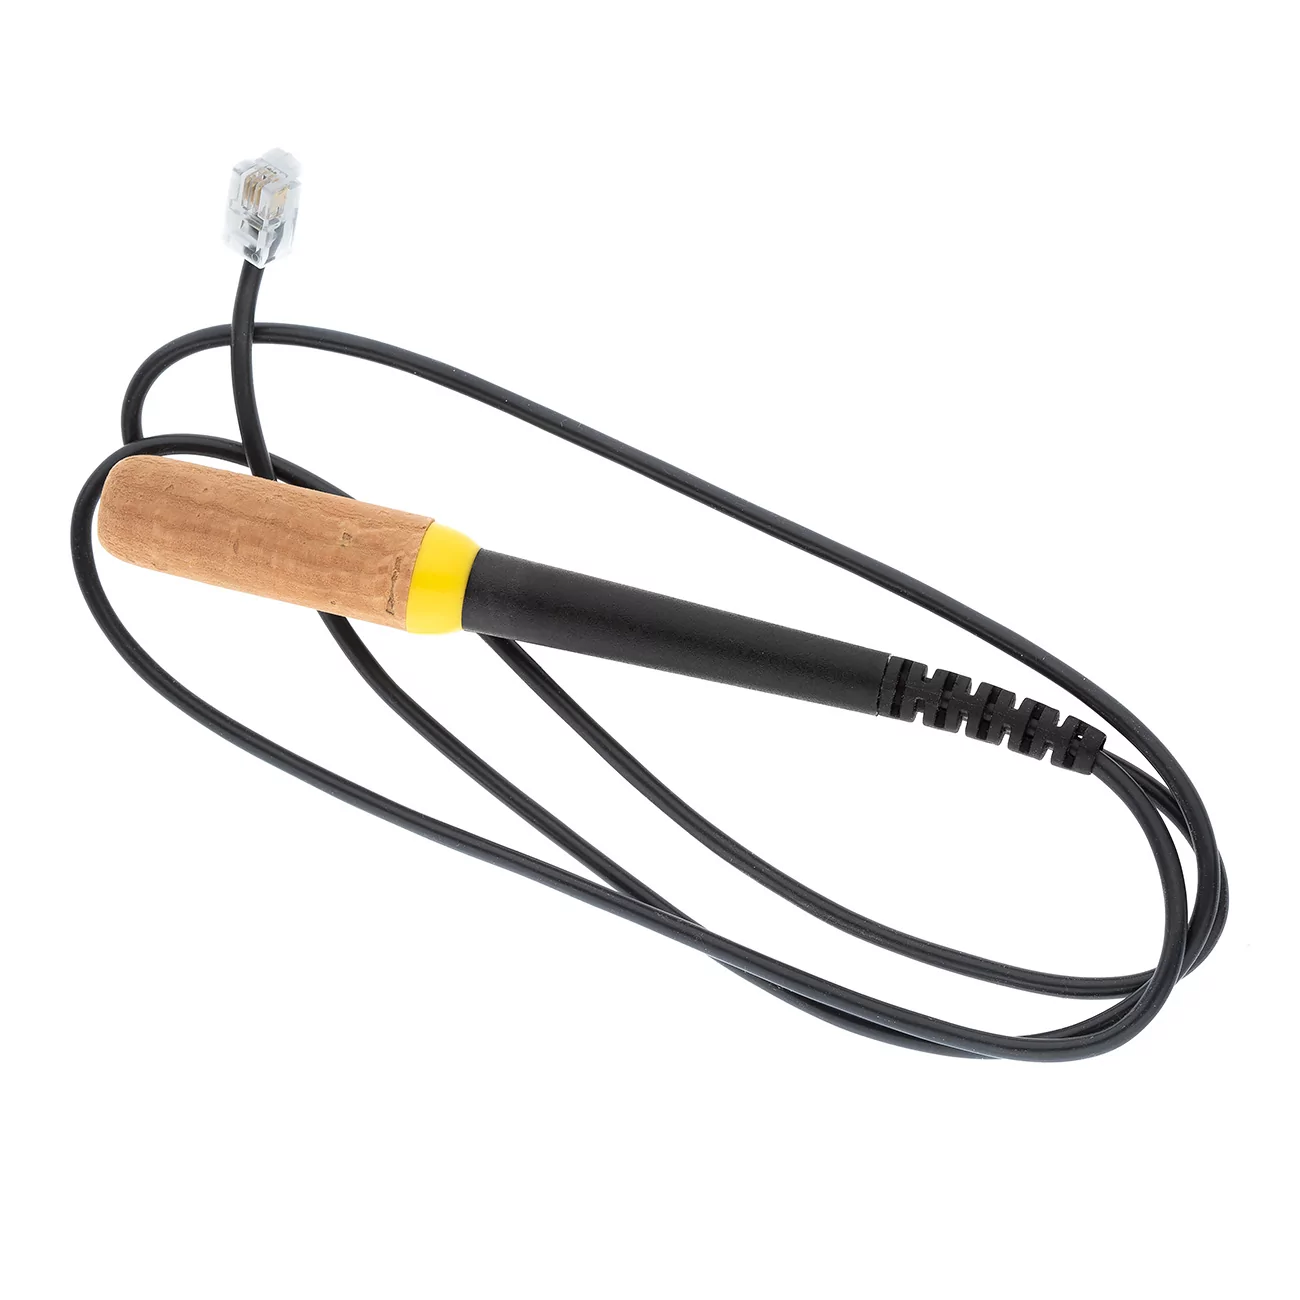 Нагревательная рукоятка, желтая/Heating handle, yellow, 2154-0001